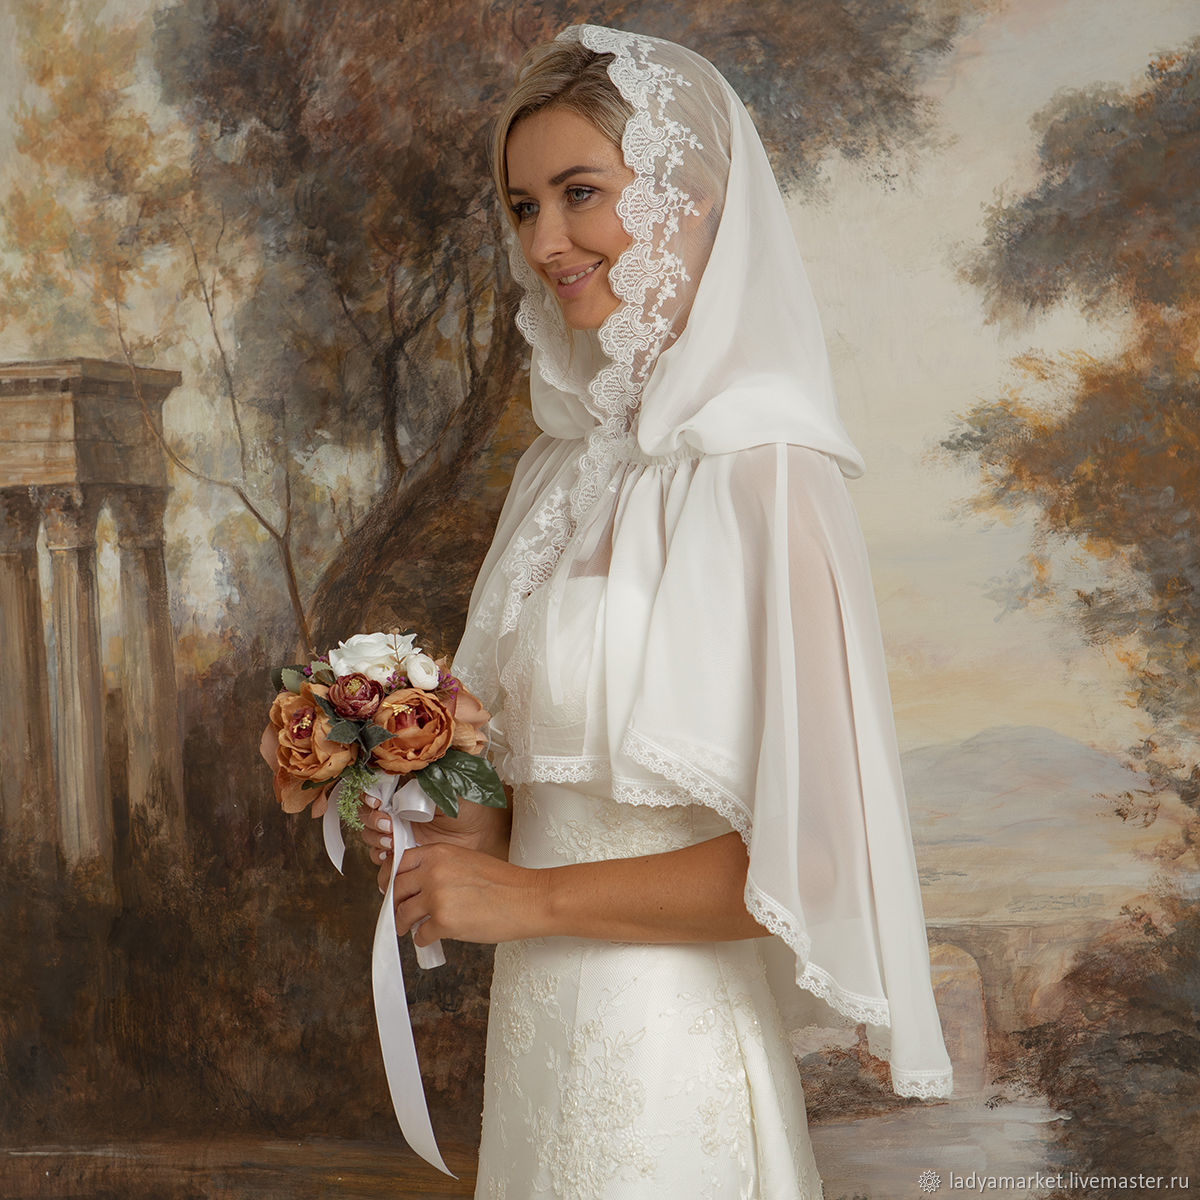 Платье для венчания для женщины. Венчальное платье. Свадебные платья для венчания. Венчальные платья для церкви. Свадебные платья для венчания в церкви.